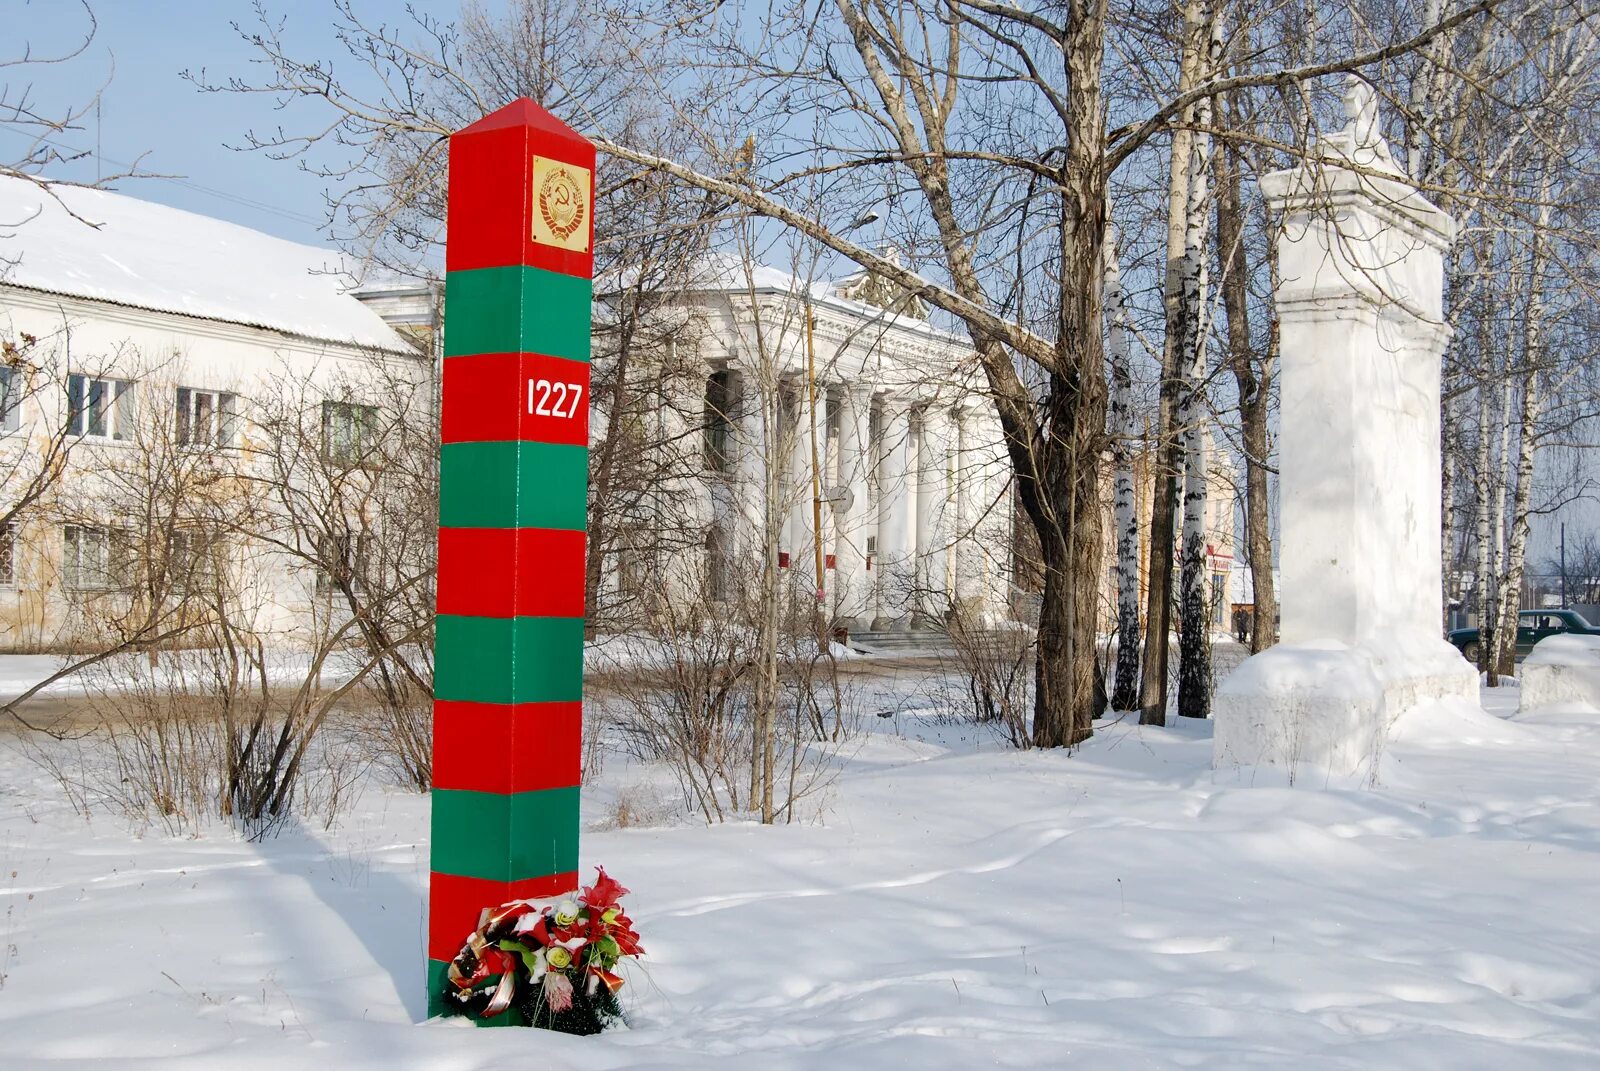 Номера телефонов белоярский свердловской области